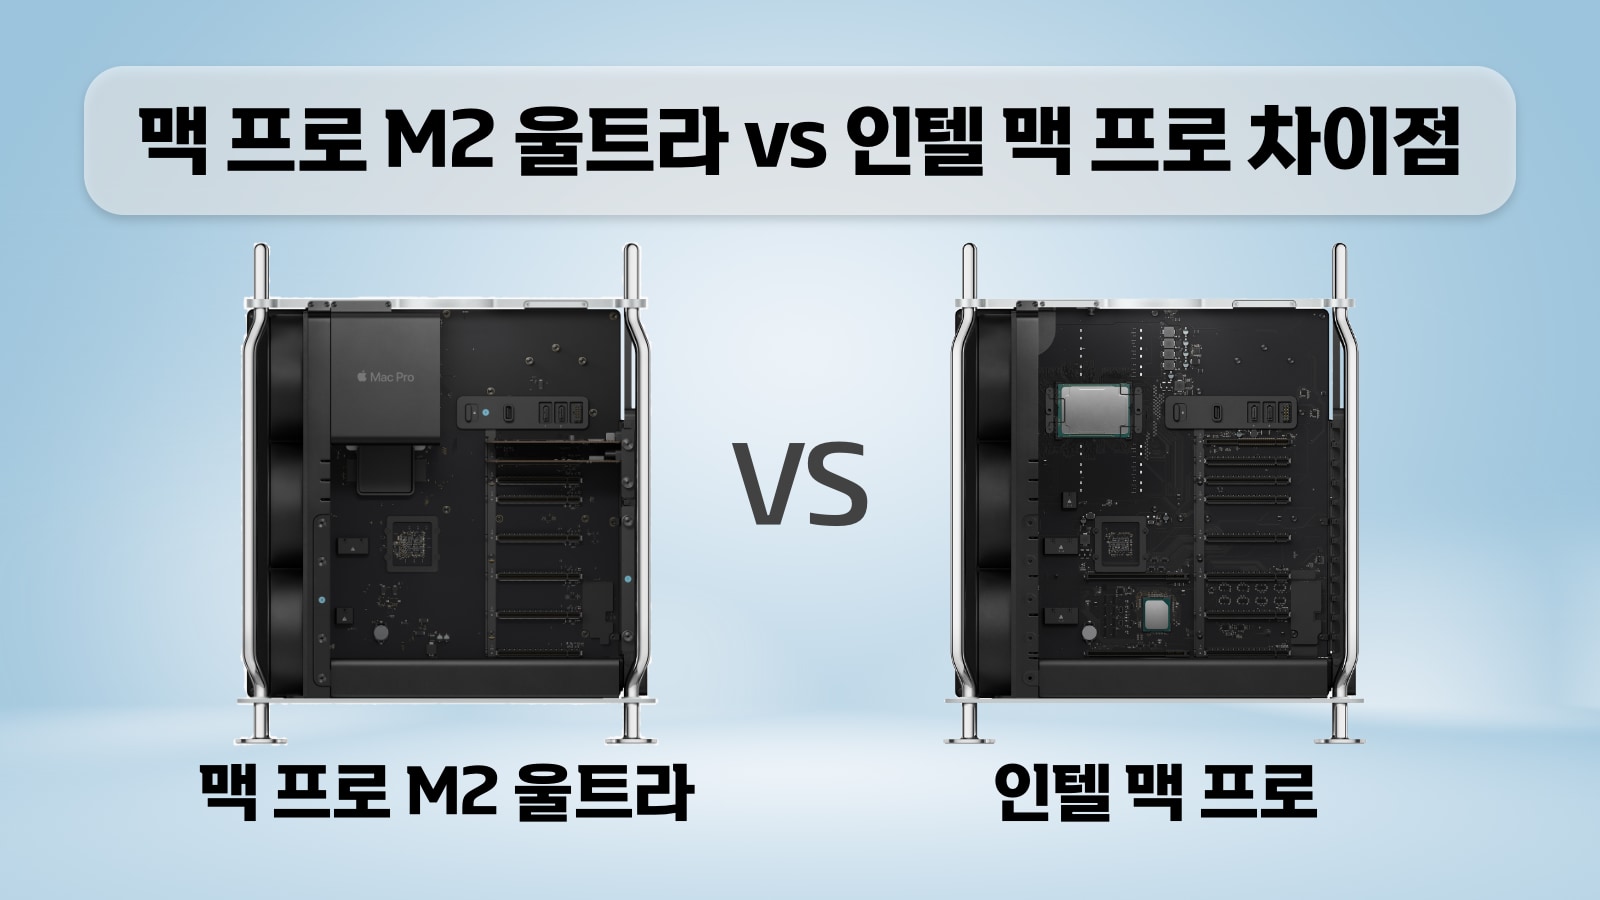 맥 프로 M2 울트라 vs 인텔 맥 프로 차이점 비교